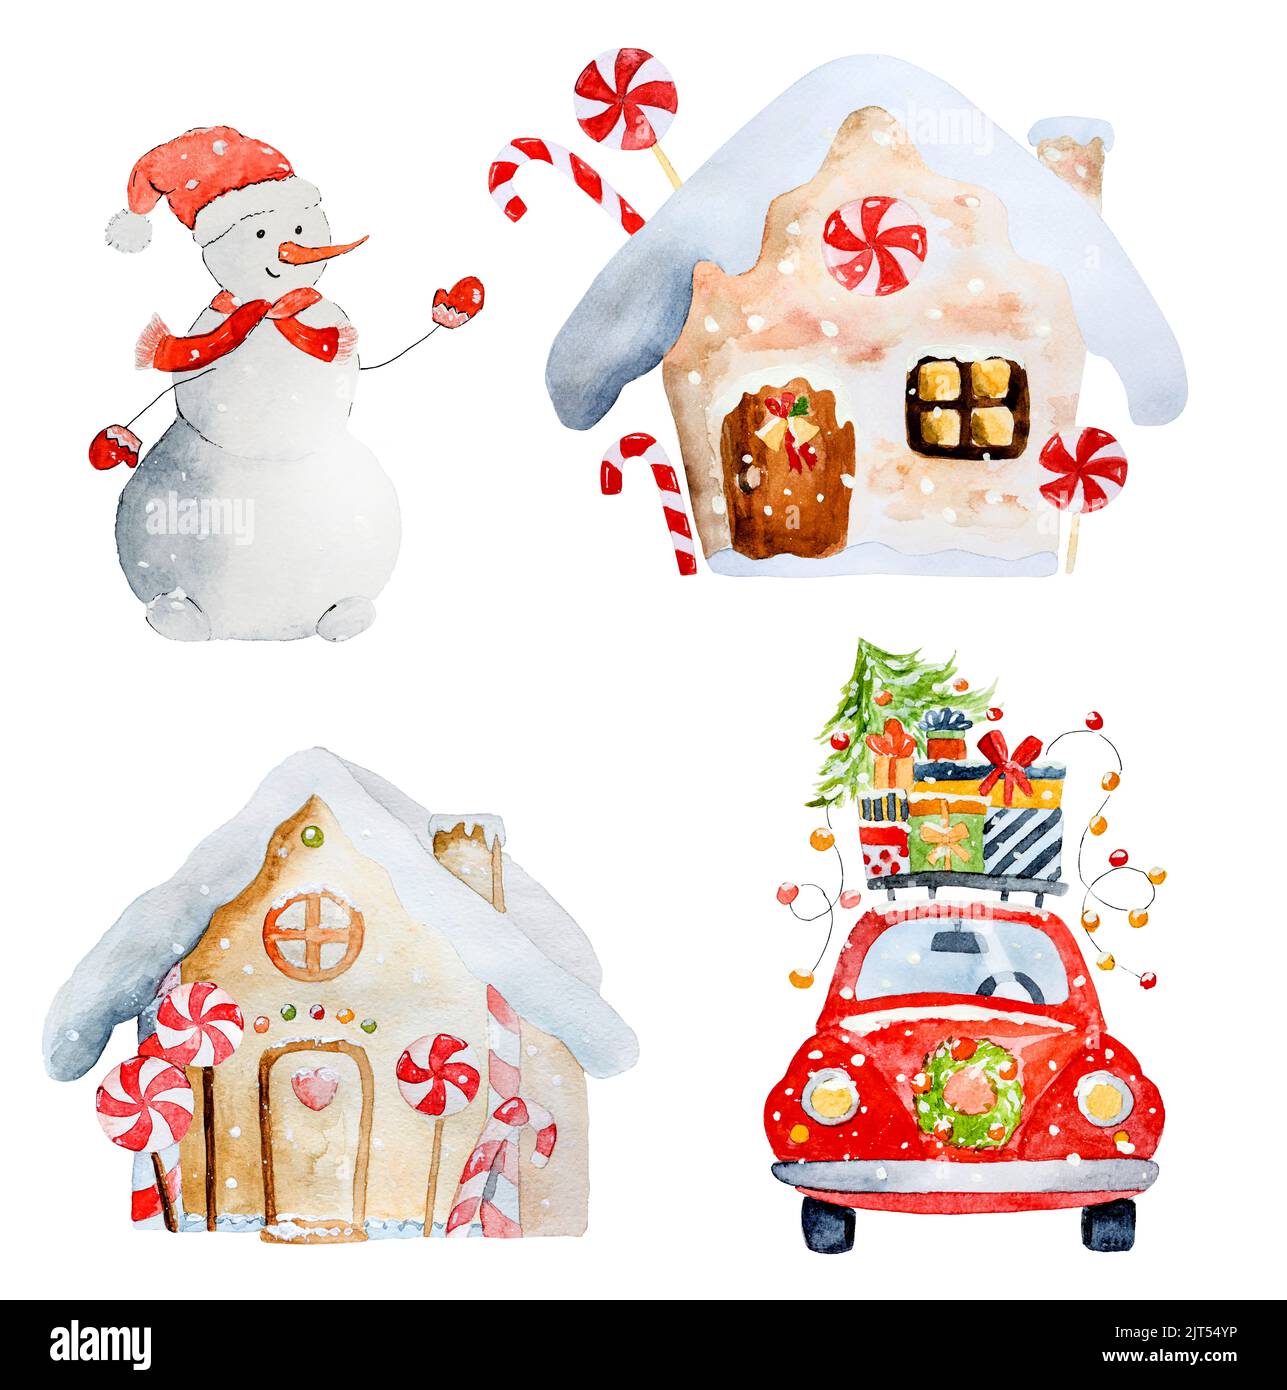 Weihnachtsbaum auf dem Auto, dekorative Christmas Ornament, Art  Illustration mit Aquarell auf weißem Hintergrund gemalt Stockfotografie -  Alamy